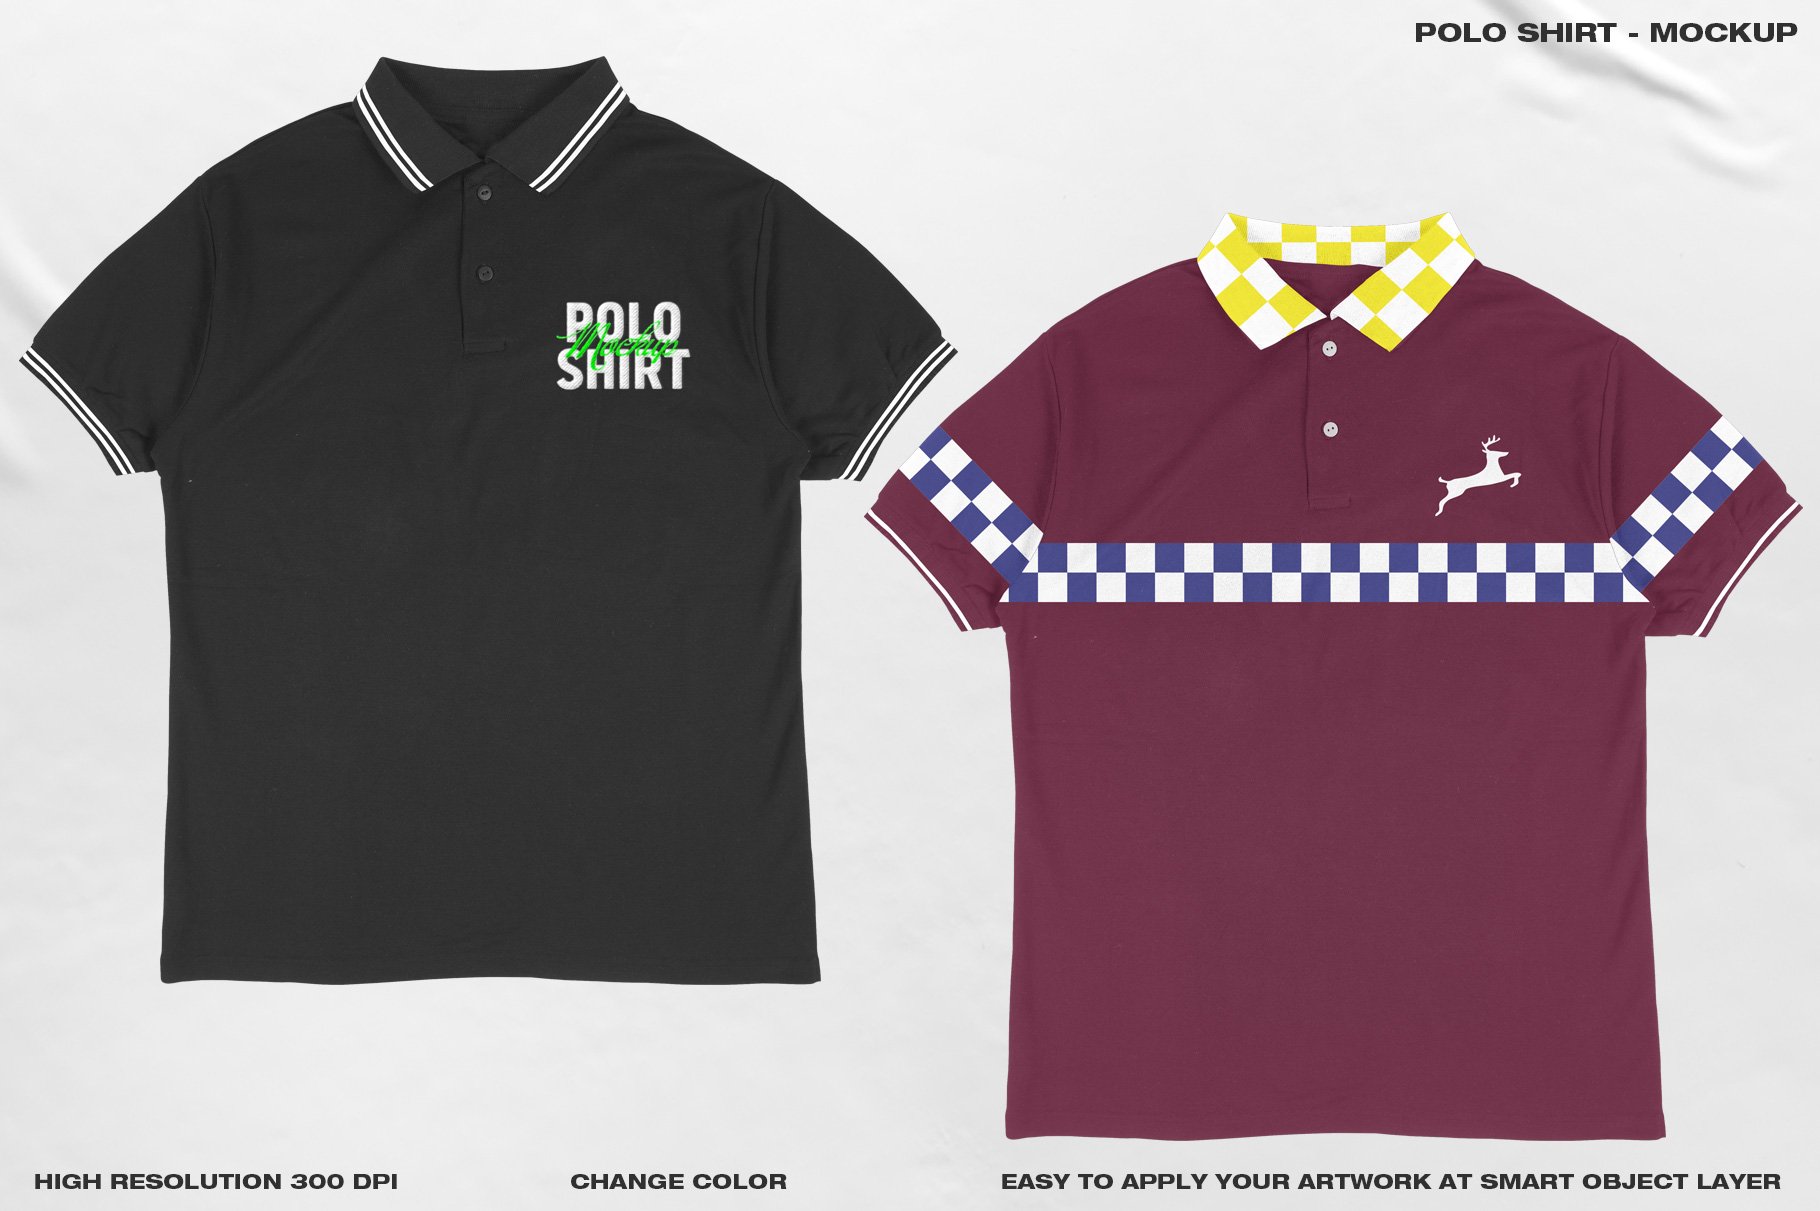 Polo Shirt - Mockup preview image.